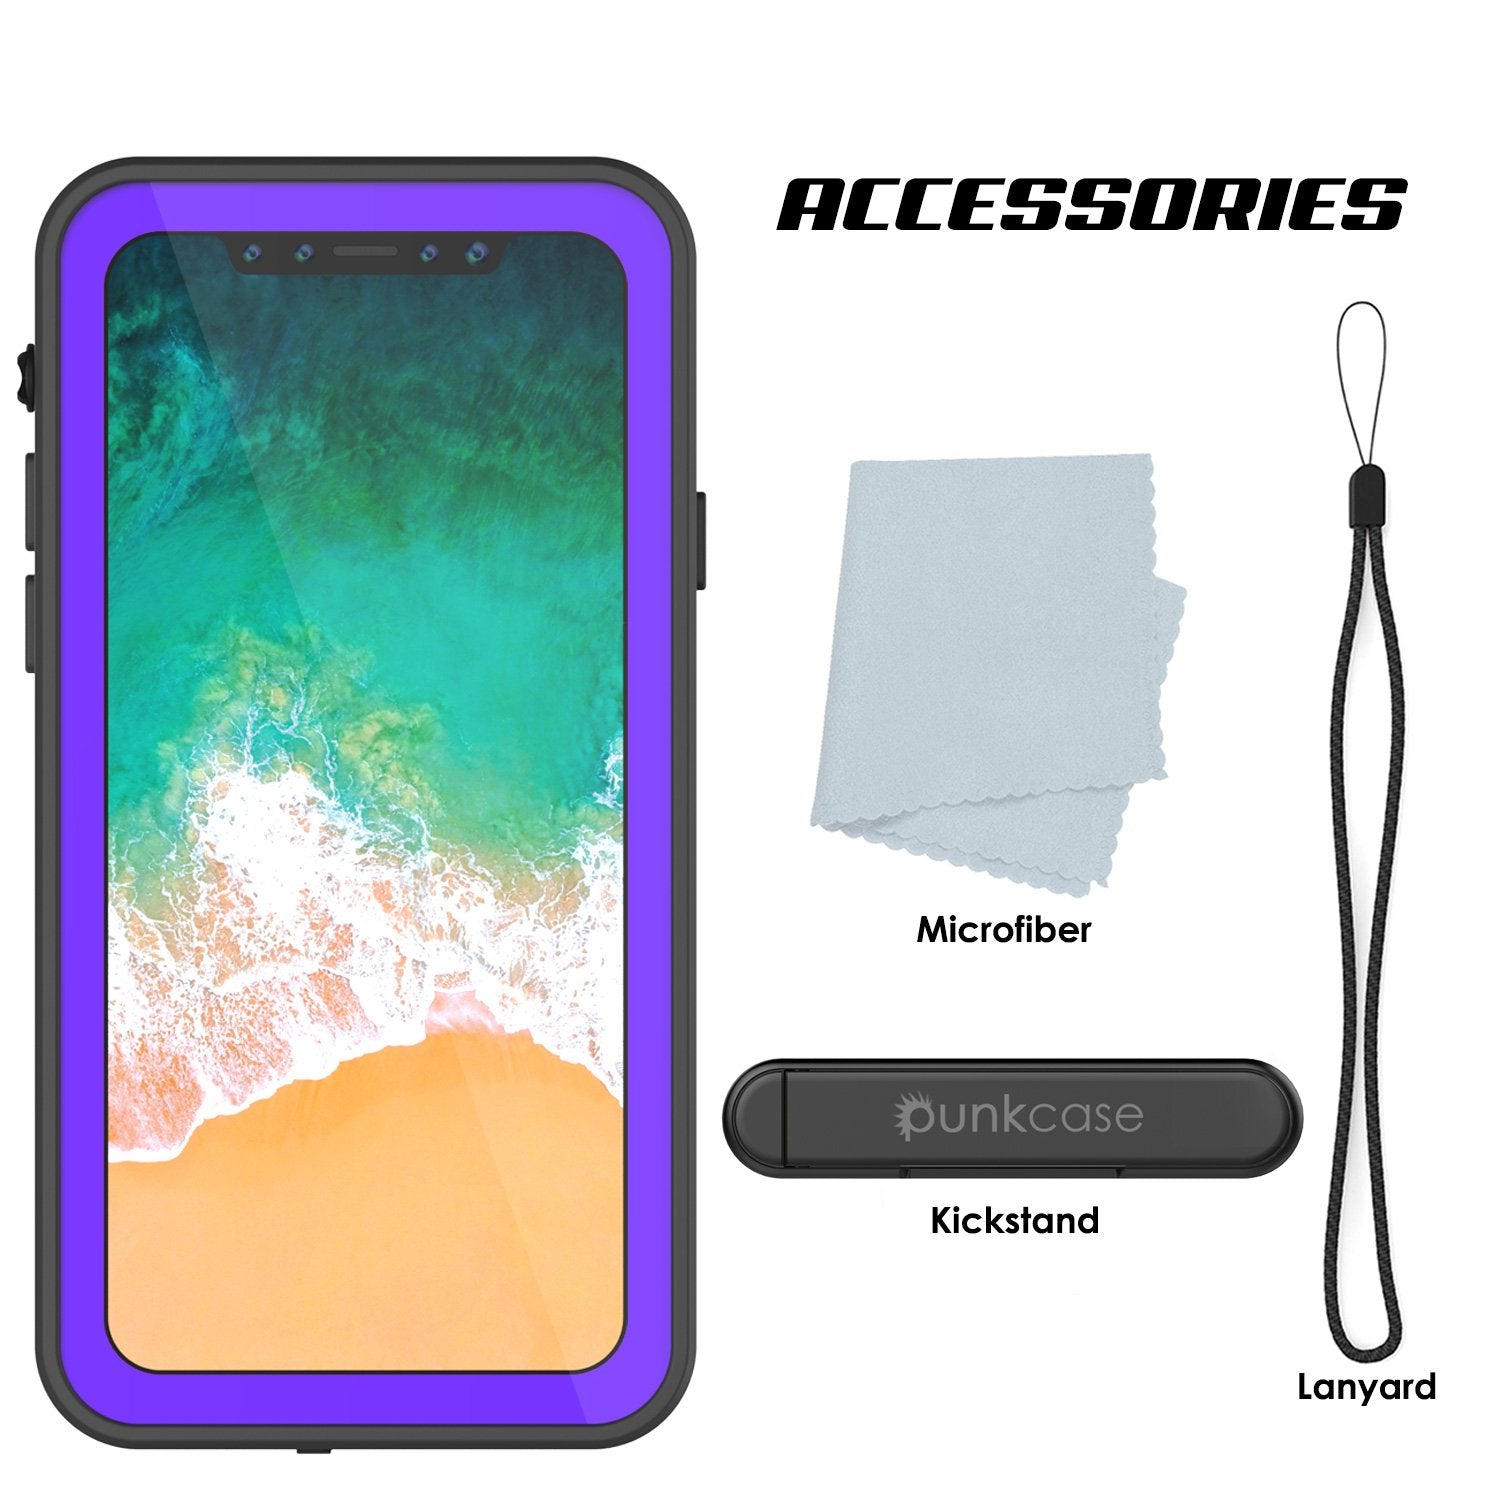 iPhone X Waterproof IP68 Case, Punkcase [Purple] [StudStar Series] [Slim Fit] [Dirtproof] - PunkCase NZ